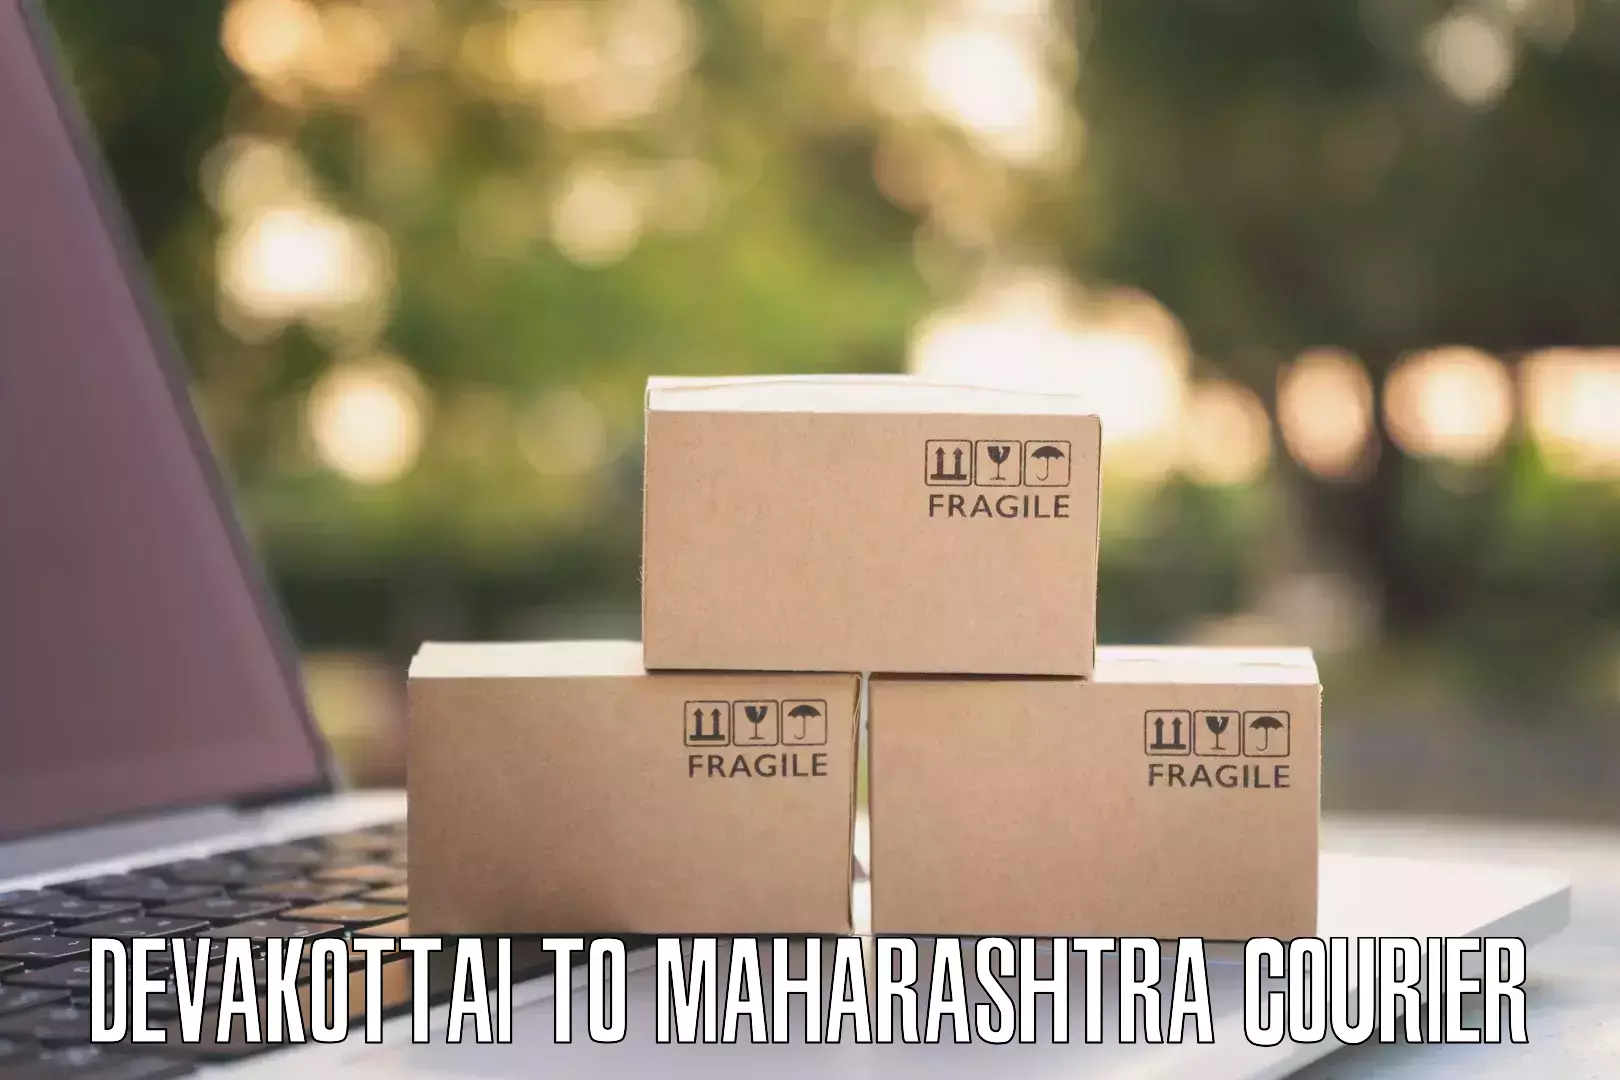 Weekend courier service Devakottai to Latur